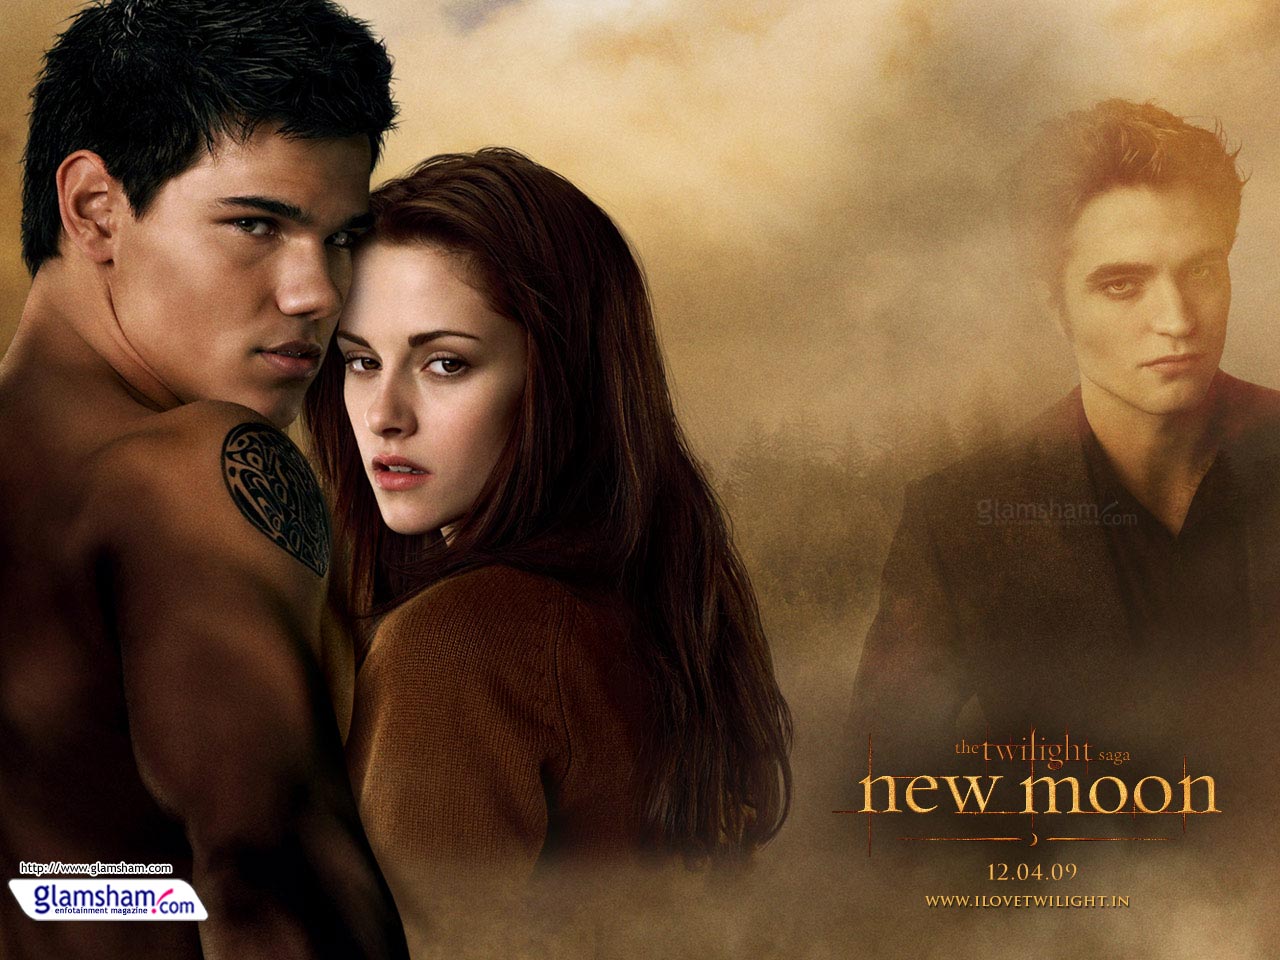 The Twilight Saga: New Moon #6